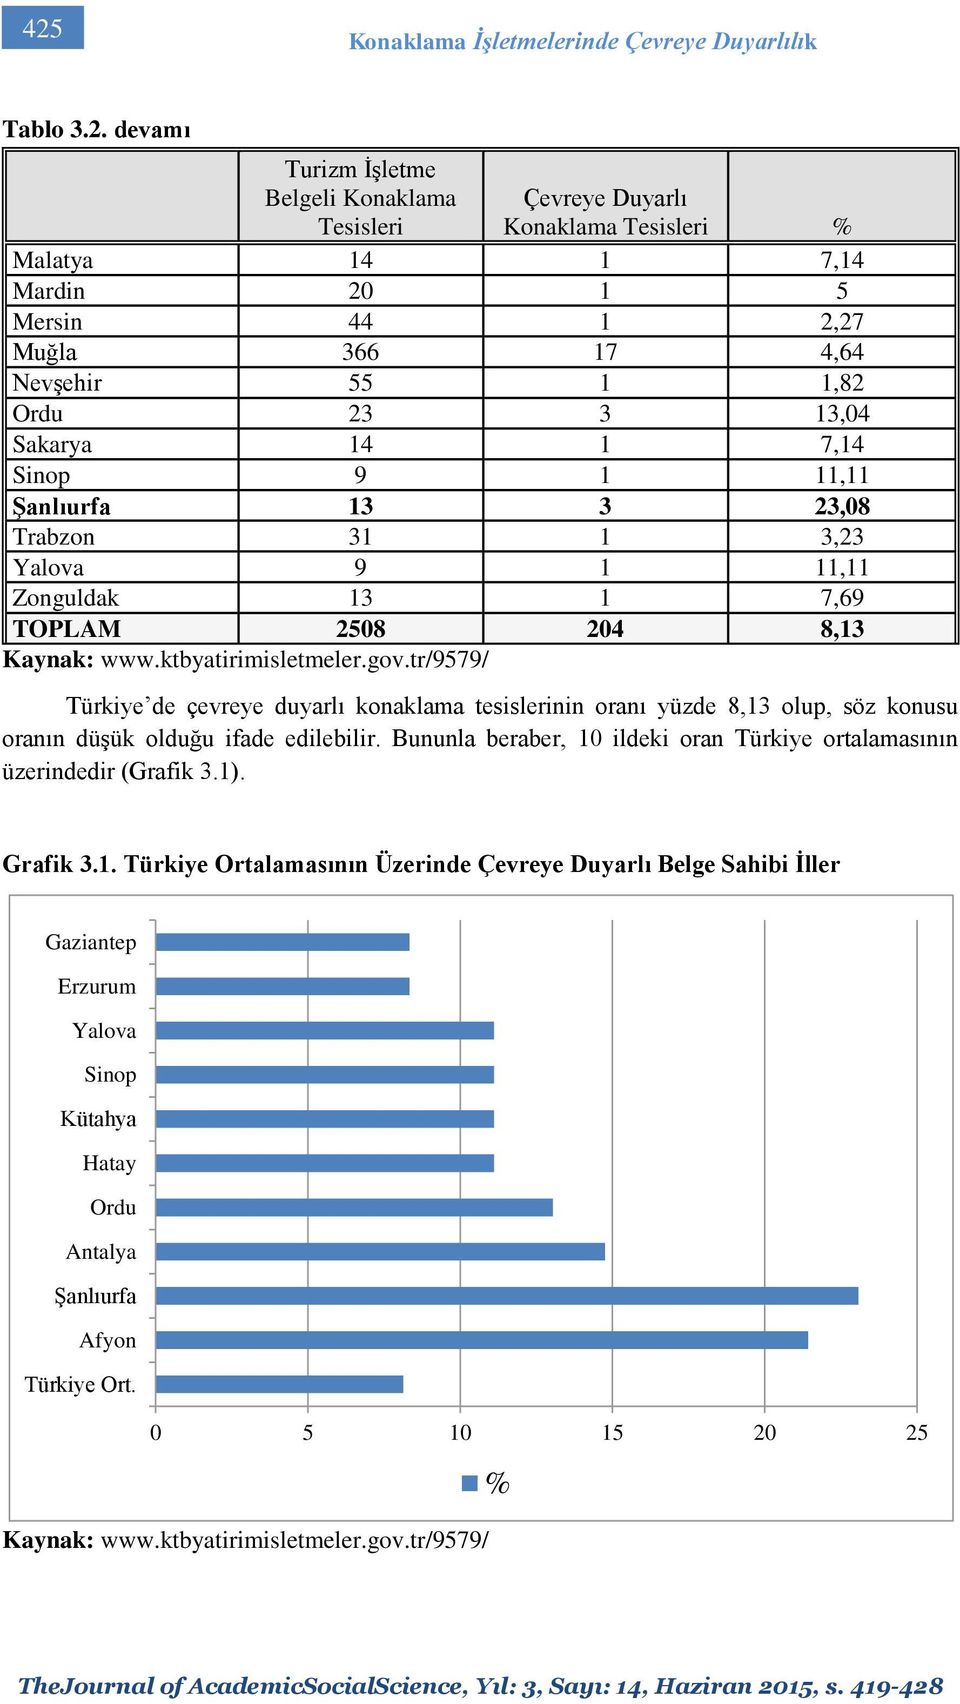 ktbyatirimisletmeler.gov.tr/9579/ Türkiye de çevreye duyarlı konaklama tesislerinin oranı yüzde 8,13 olup, söz konusu oranın düşük olduğu ifade edilebilir.